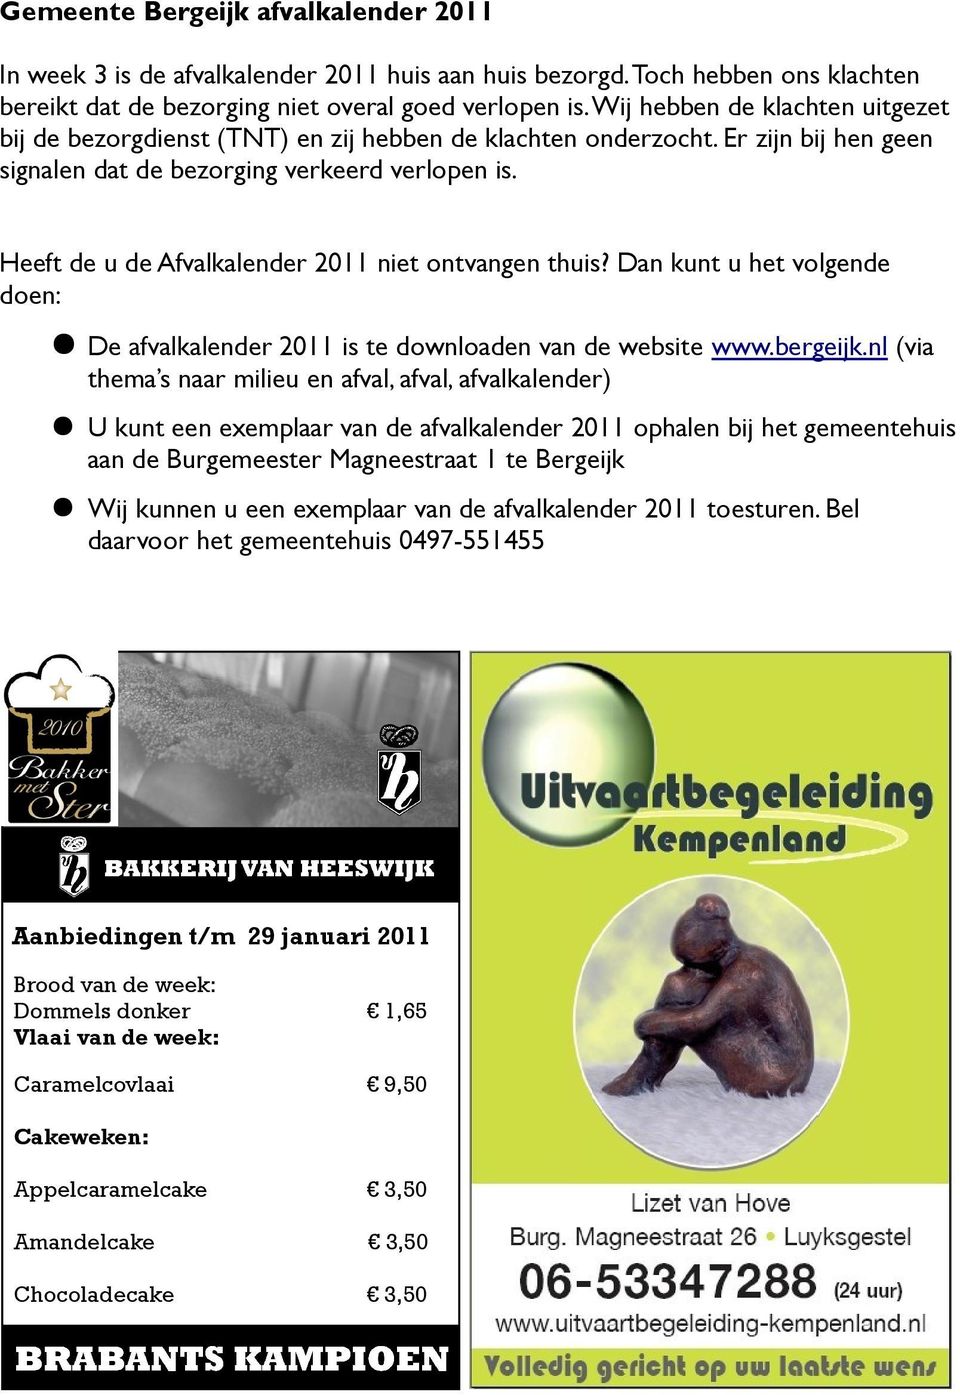 Heeft de u de Afvalkalender 2011 niet ontvangen thuis? Dan kunt u het volgende doen: De afvalkalender 2011 is te downloaden van de website www.bergeijk.